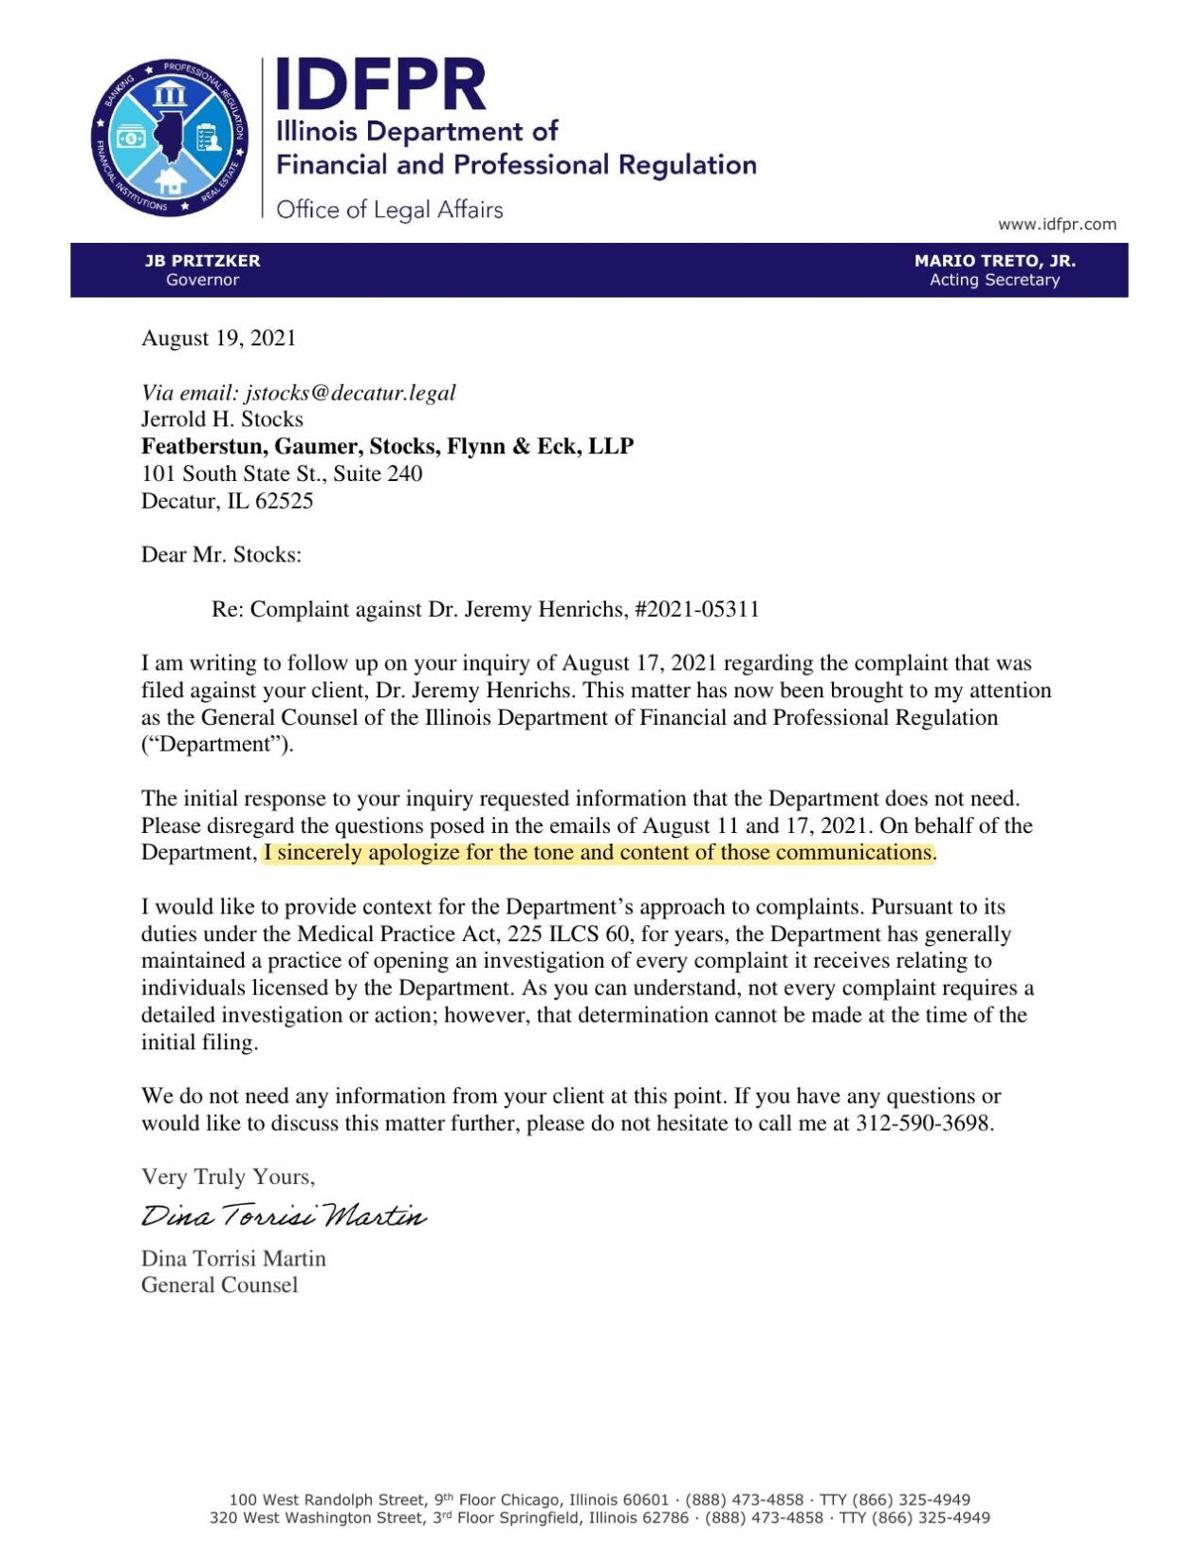 IDFPR letter about complaint against Dr. Jeremy Henrichs